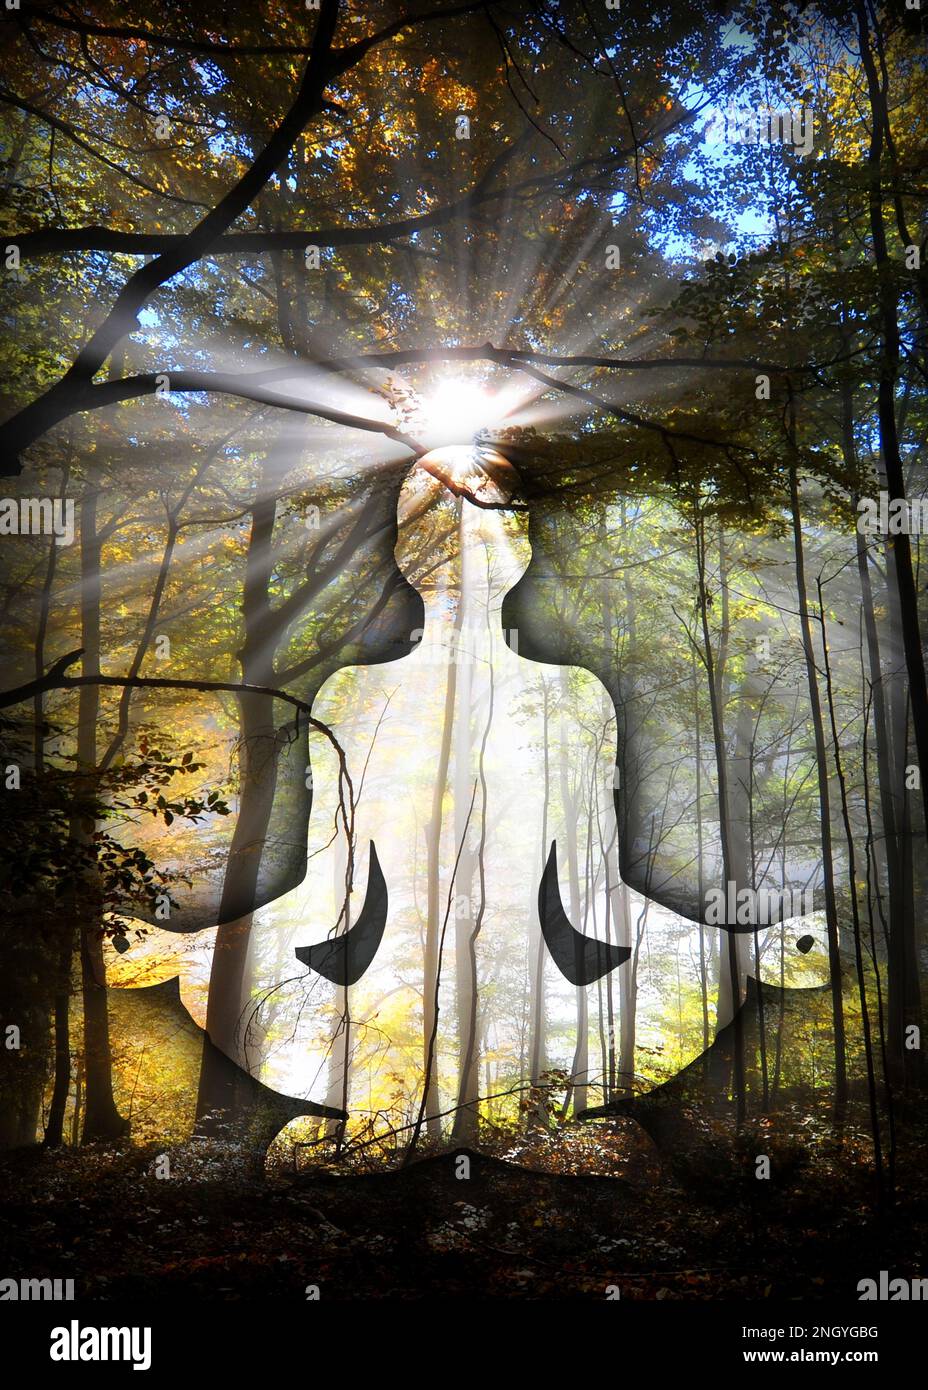 Menschliche Silhouette in Yoga/Lotus-Pose mit 7 Chakras-Symbolen und der Blume des Lebens. (Menschliche Energie Körper, Aura, Yoga Lotus Pose). Stockfoto